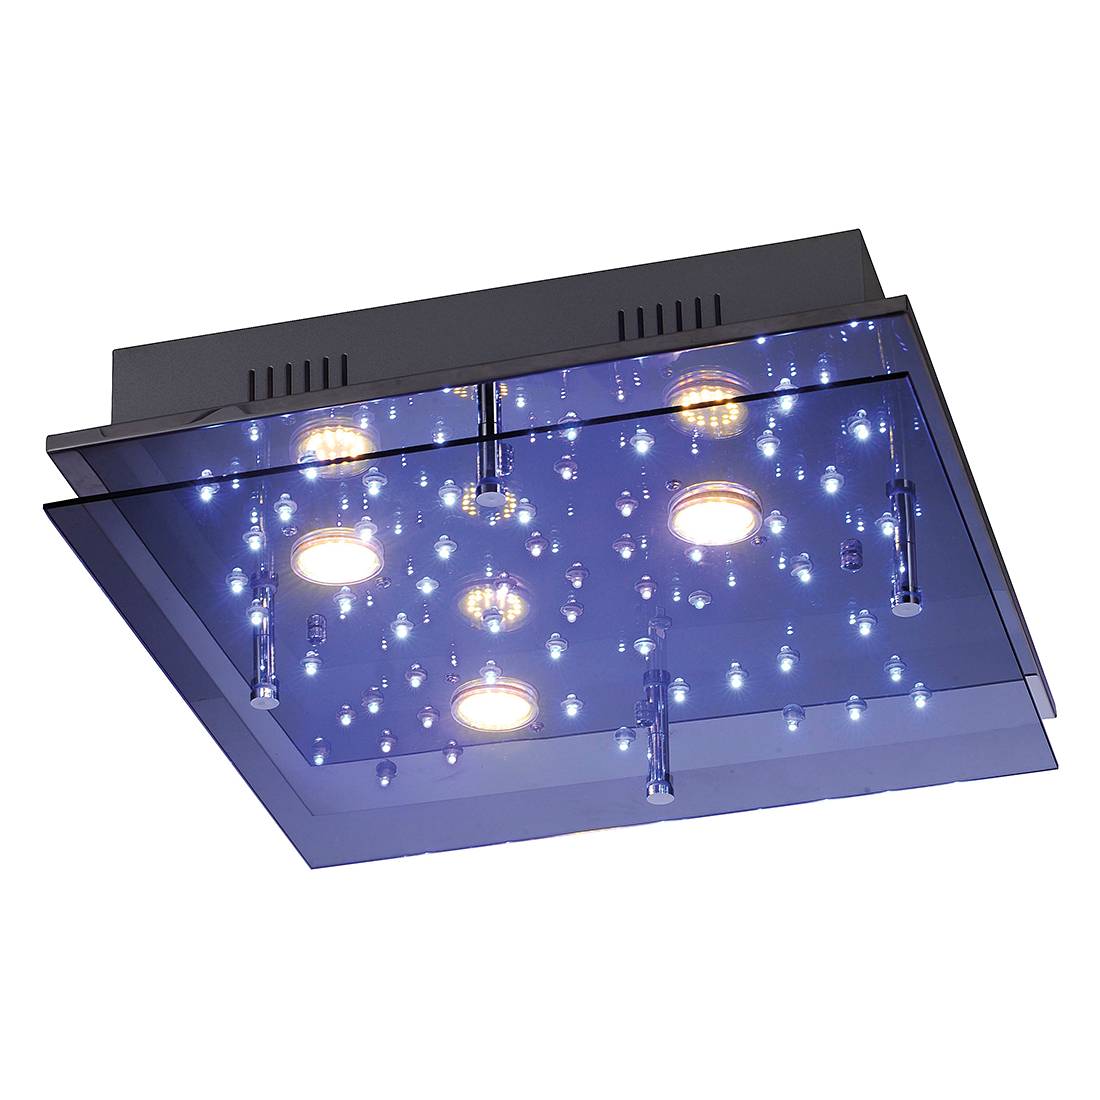 EEK A++, LED-Deckenleuchte Nightsky 2 by Leuchten Direkt - Eisen/Chrom - Silber, Leuchten Direkt